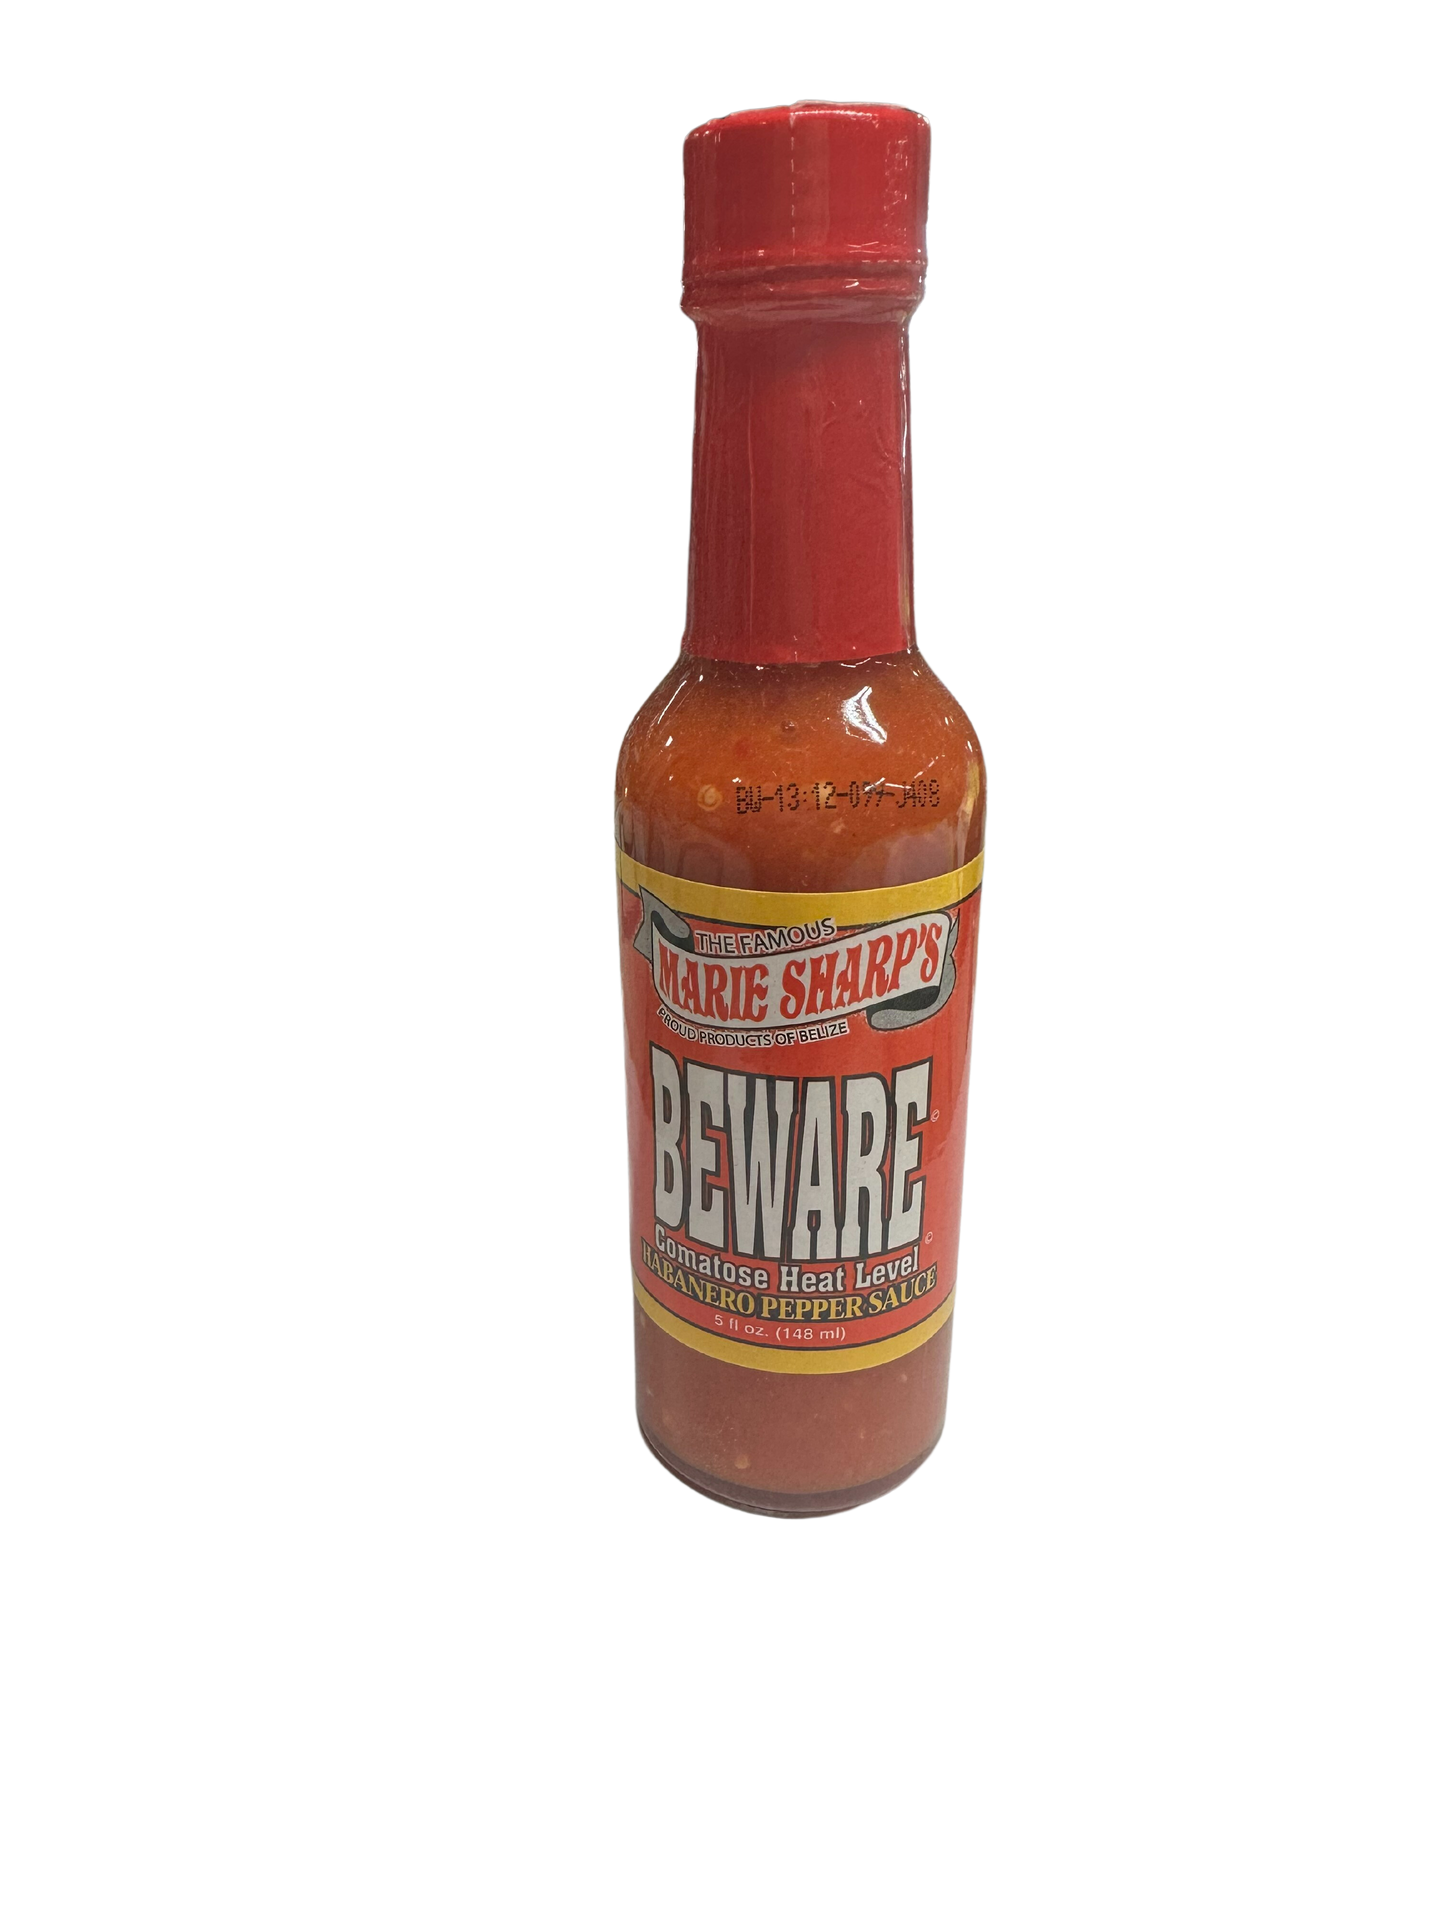 Marie Sharp's Beware Comatose Habanero Pepper Sauce